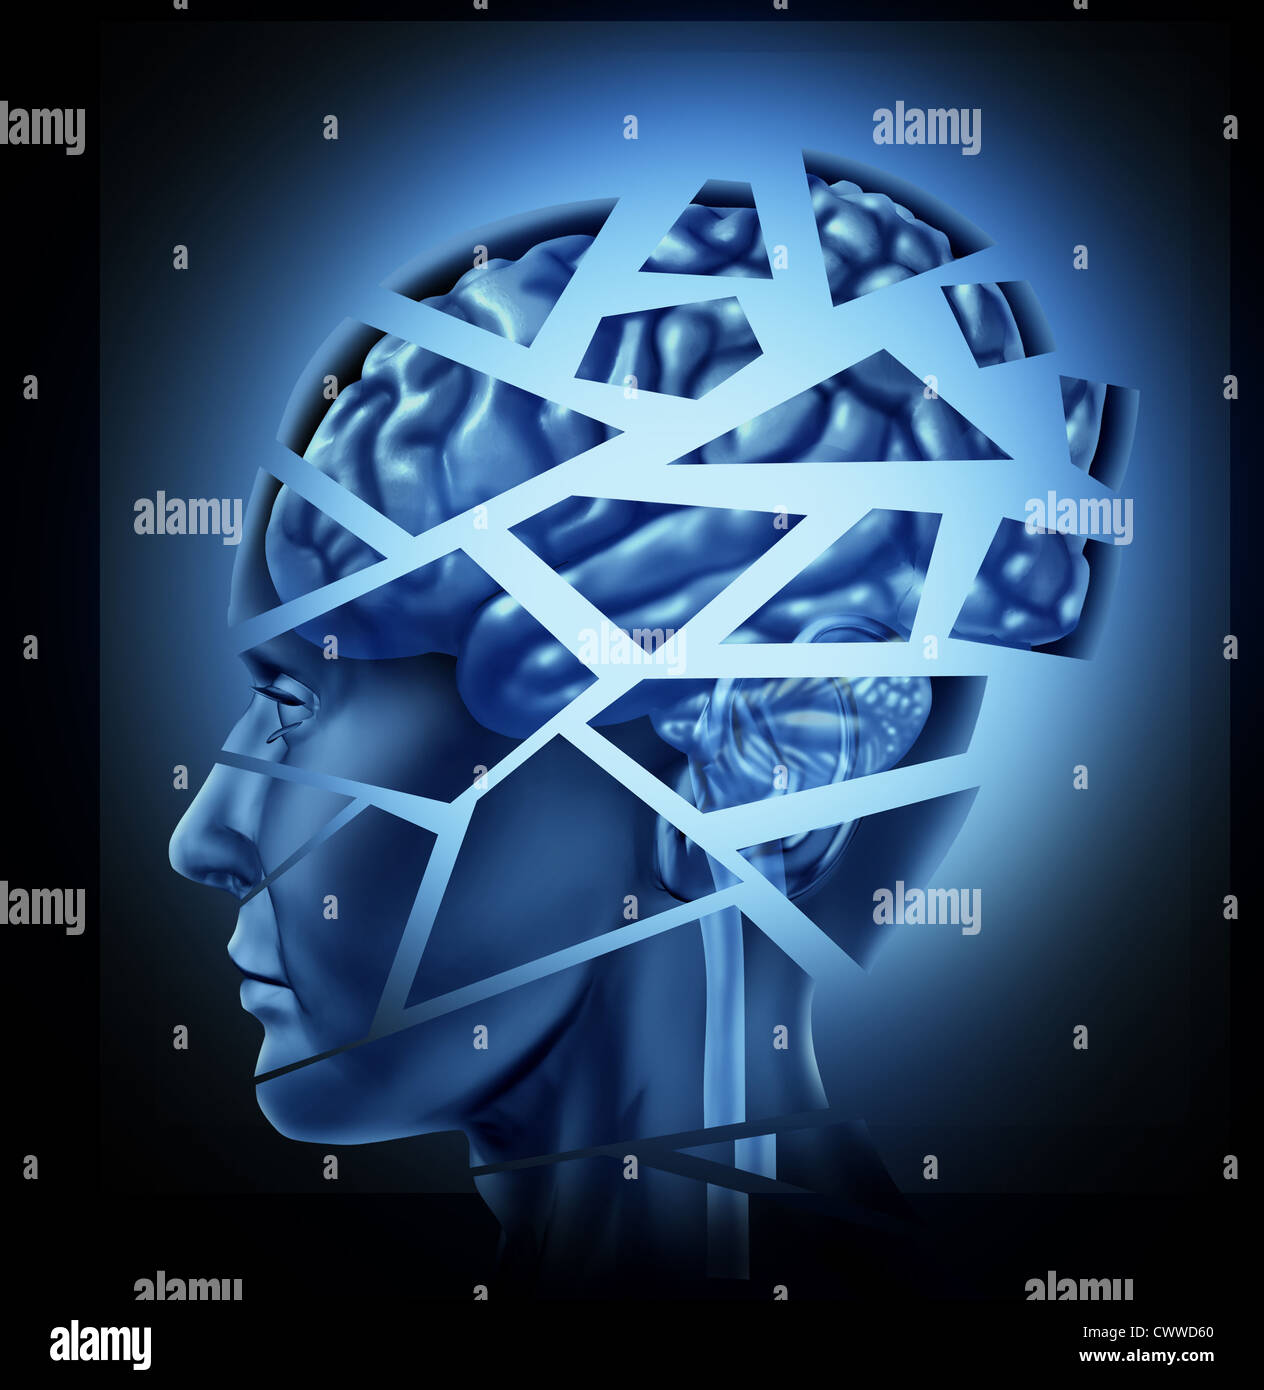 Beschädigte menschliche Hirn-Trauma und neurologische Störung, die durch eines Mannes Kopf und Verstand in Stücke gebrochen, symbolisiert eine schwere medizinische psychisches Trauma und kognitive Krankheit auf schwarzem Hintergrund dargestellt. Stockfoto